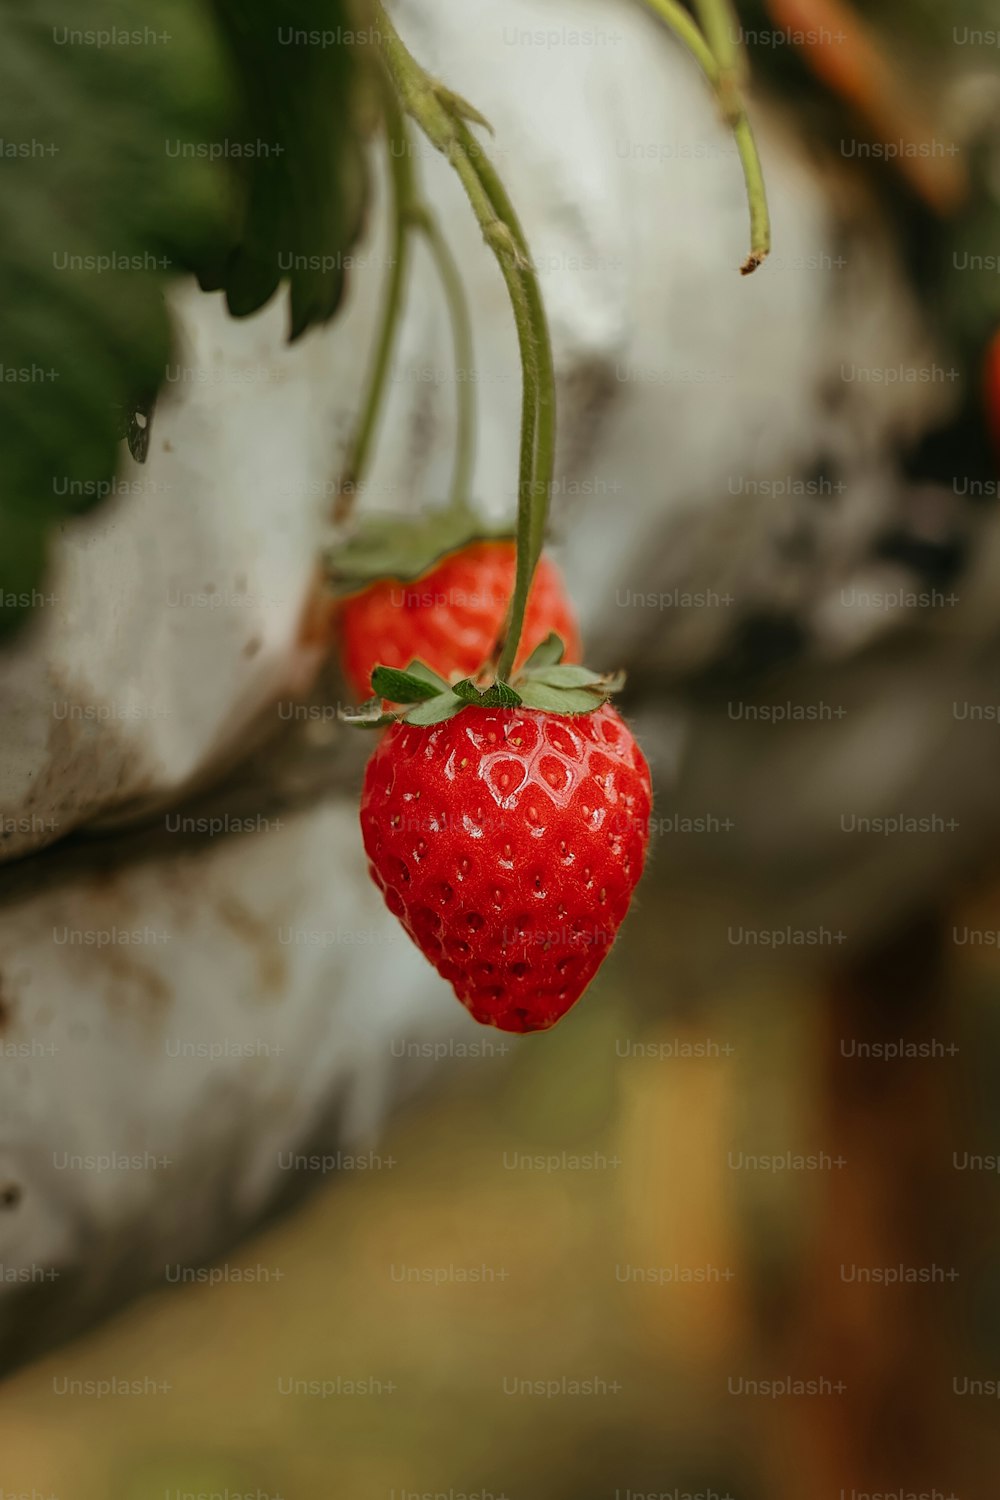 Un primer plano de una fresa en una planta